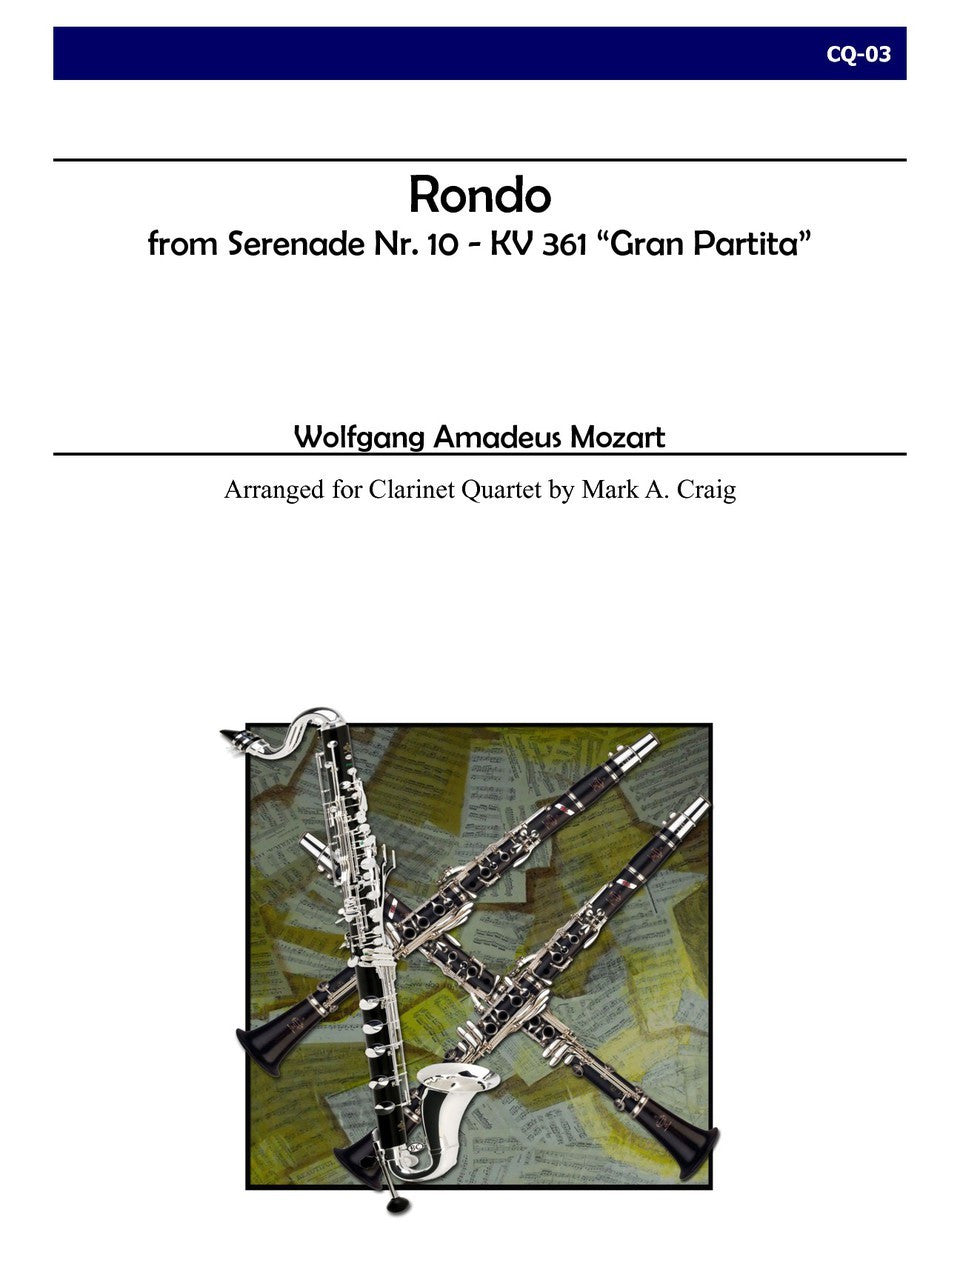 Rondo from Gran Partita for Clarinet Quartet